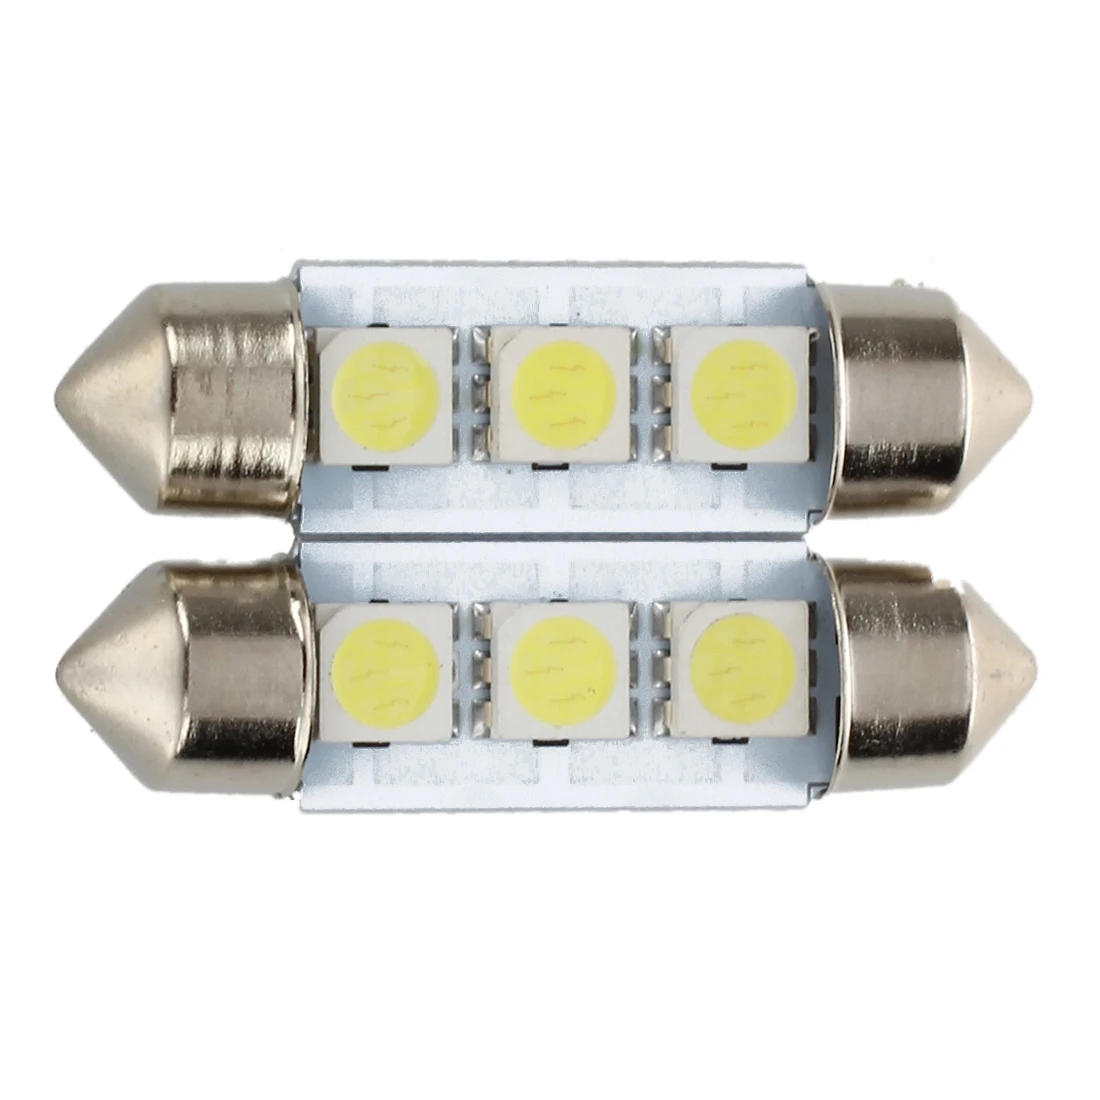 

2x C5W 3 LED SMD 5050 36mm Xenon White Bulb plate shuttle Festoons dome ceiling lamp car light